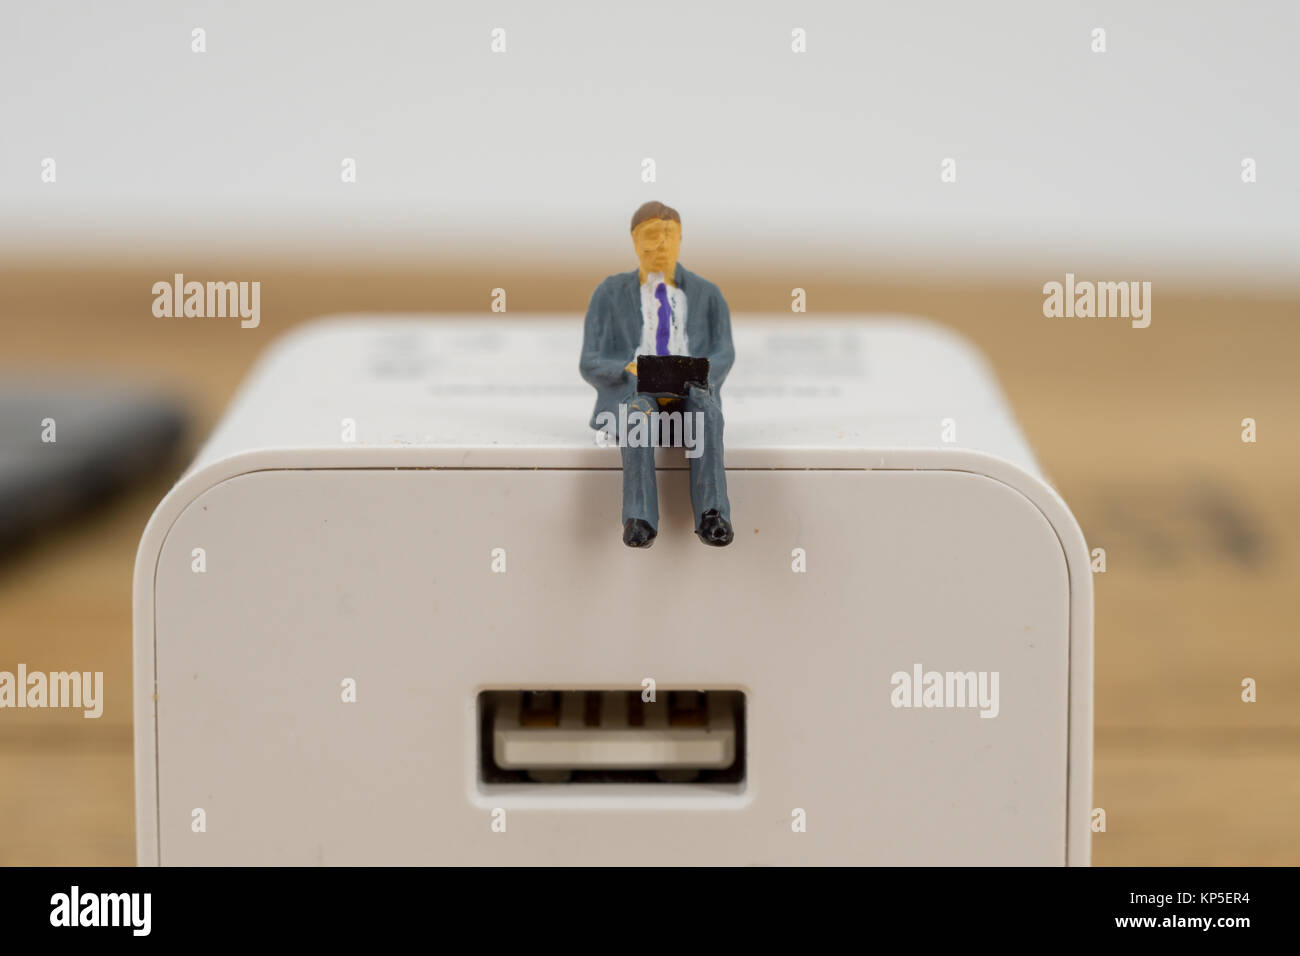 Entreprises, technologie concept. Petite miniature d'affaires figure toy siège au sommet d'une prise électrique avec copie espace Banque D'Images